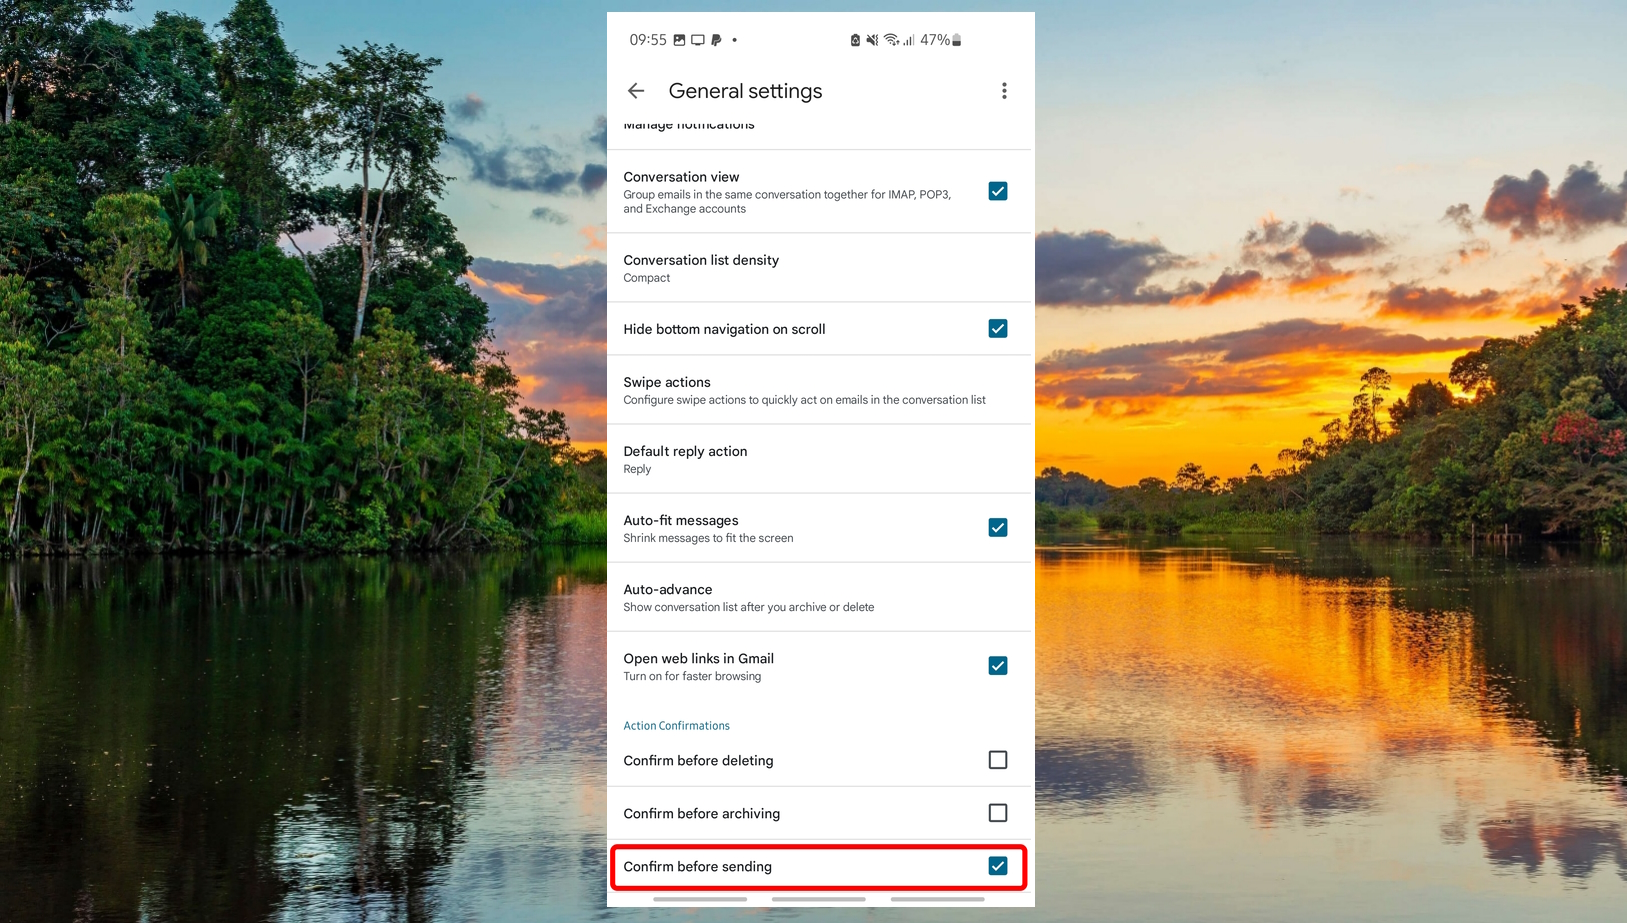 Gmail app - menu - settings - General settings - confirm before sending